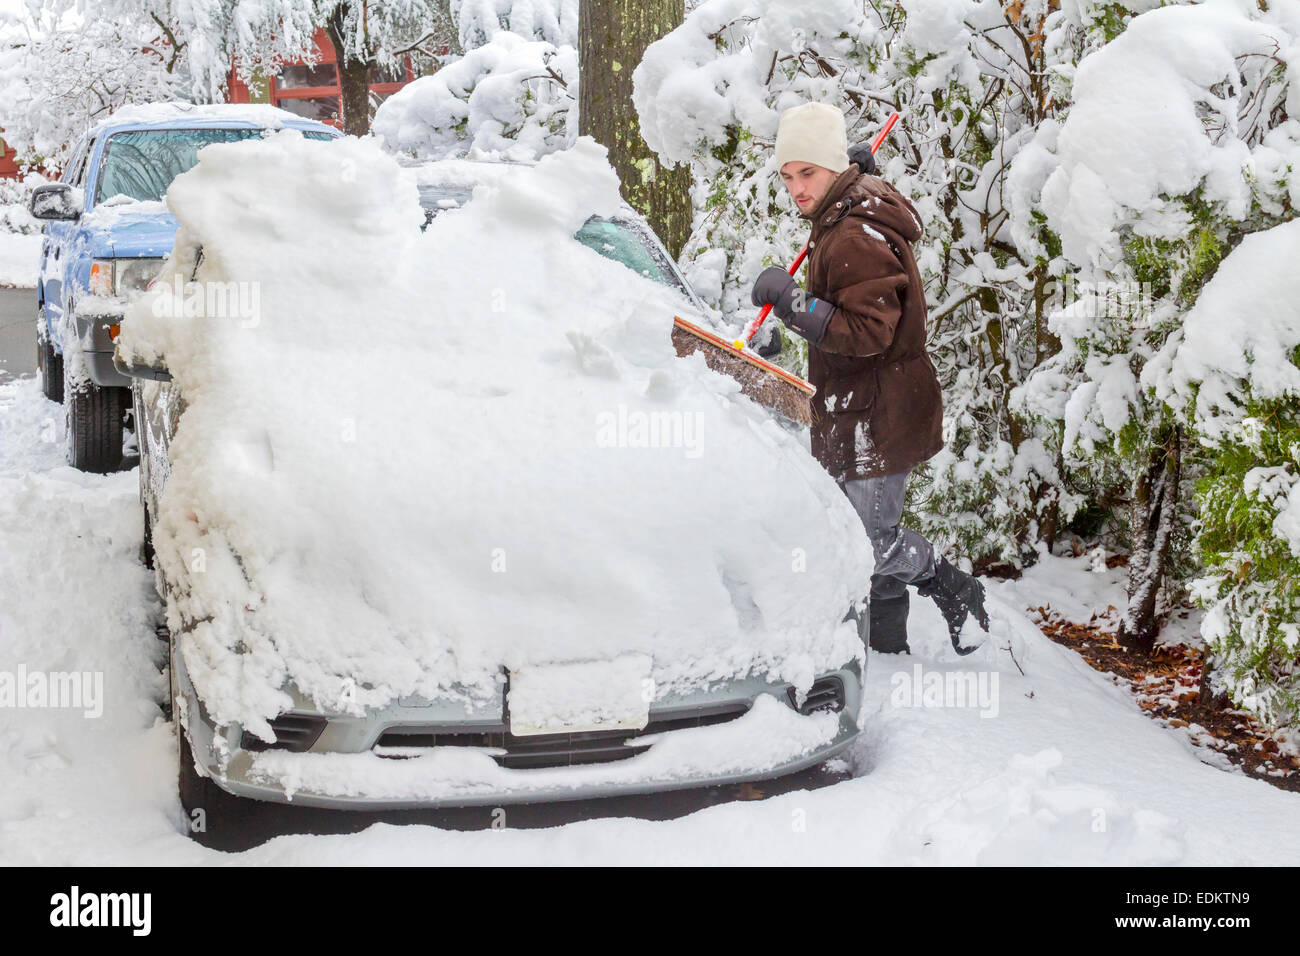 Ein Mann reinigt ein Auto von Schnee mit einem Besen Stockfotografie - Alamy